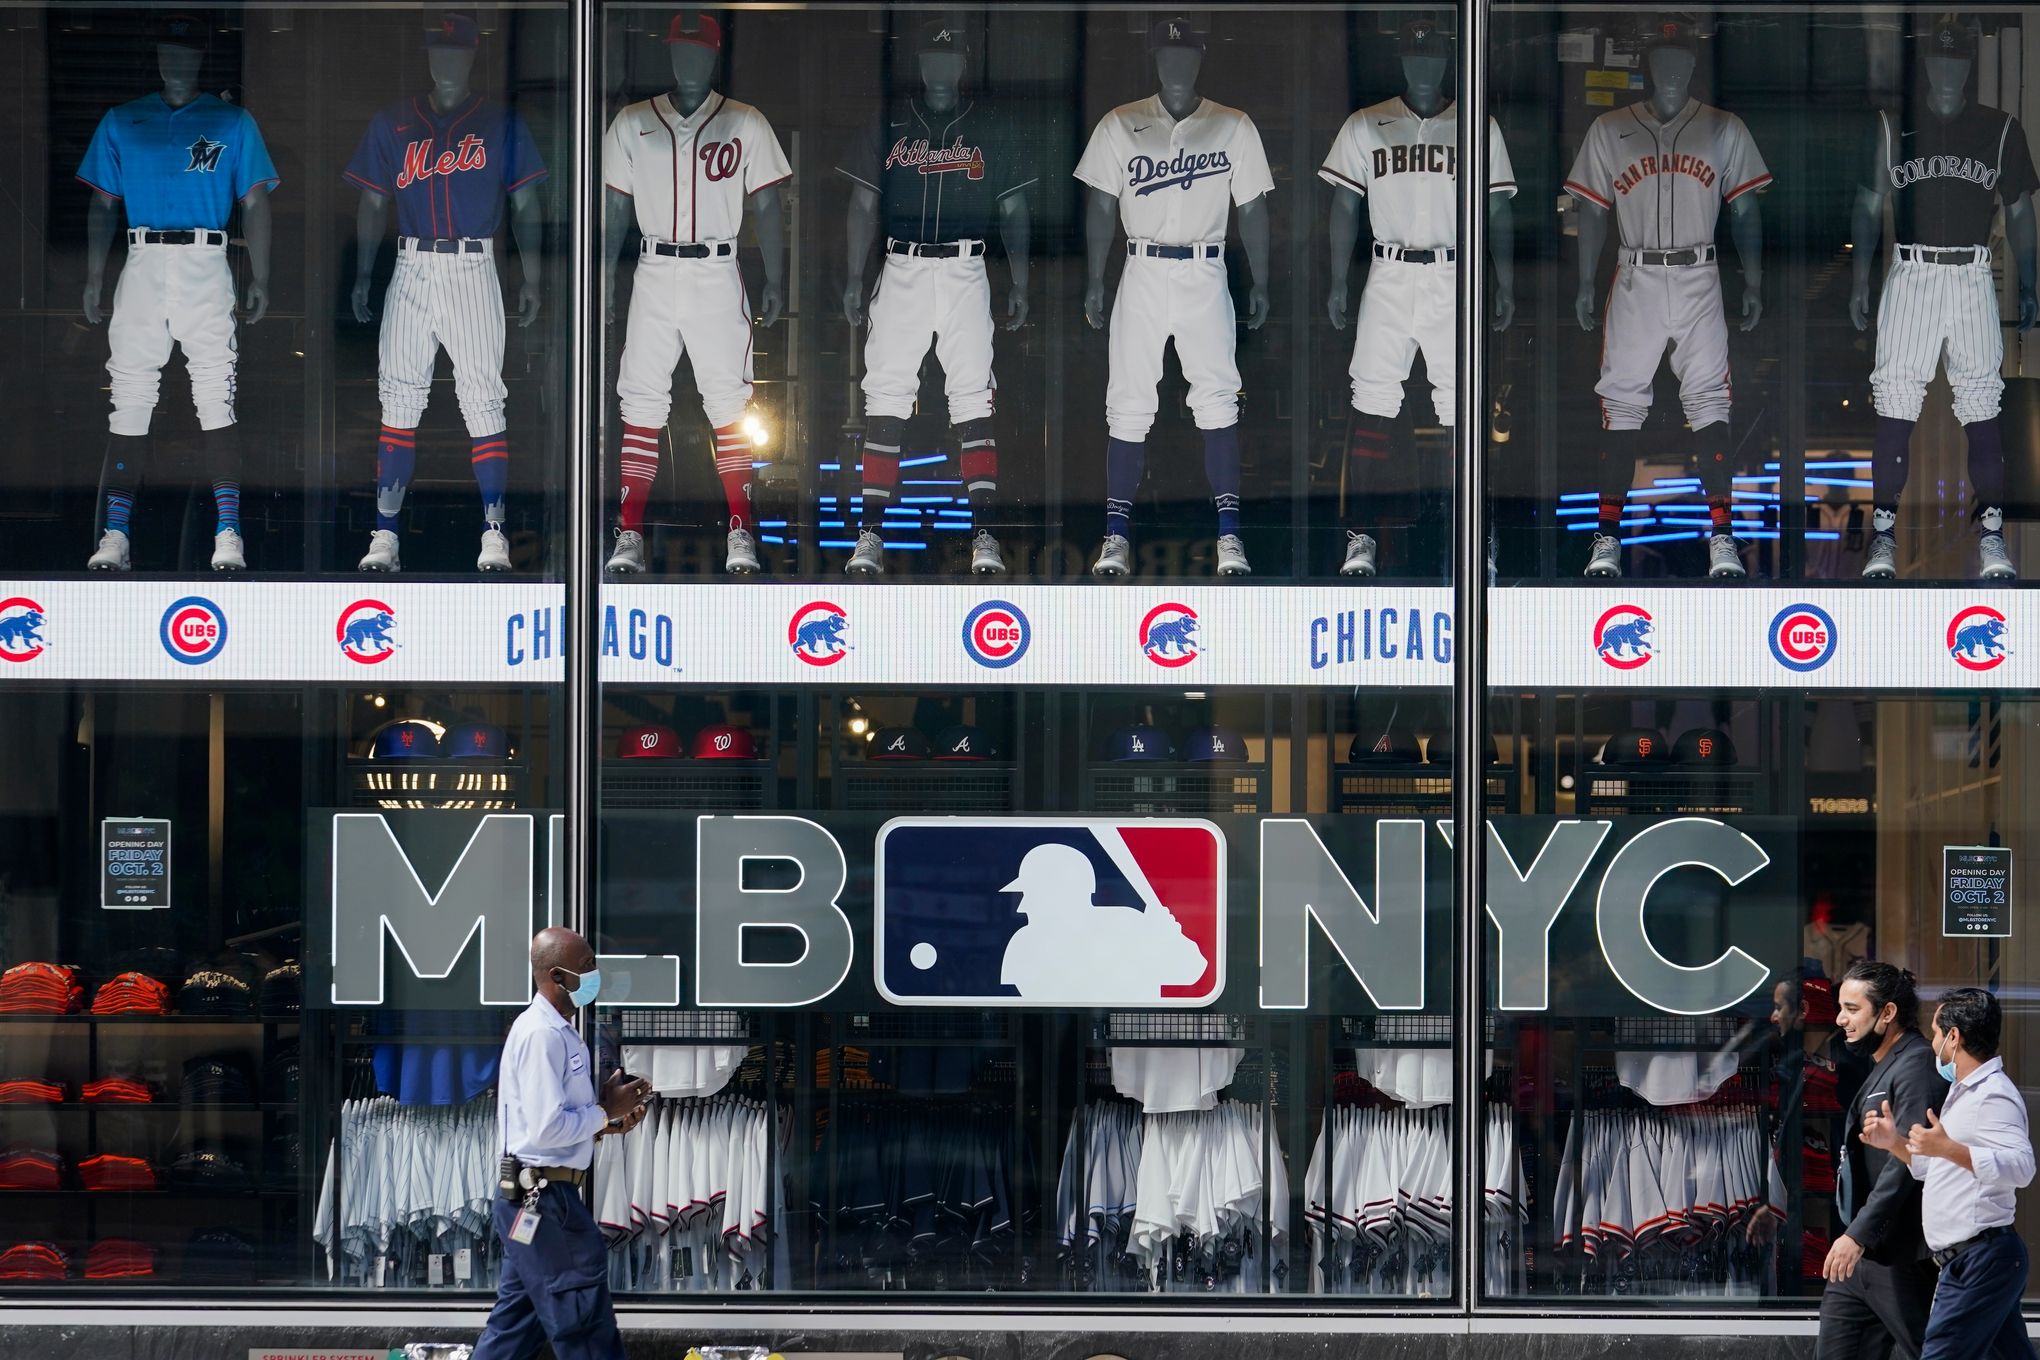 Major League Baseball flagship store in Rockefeller Center, New